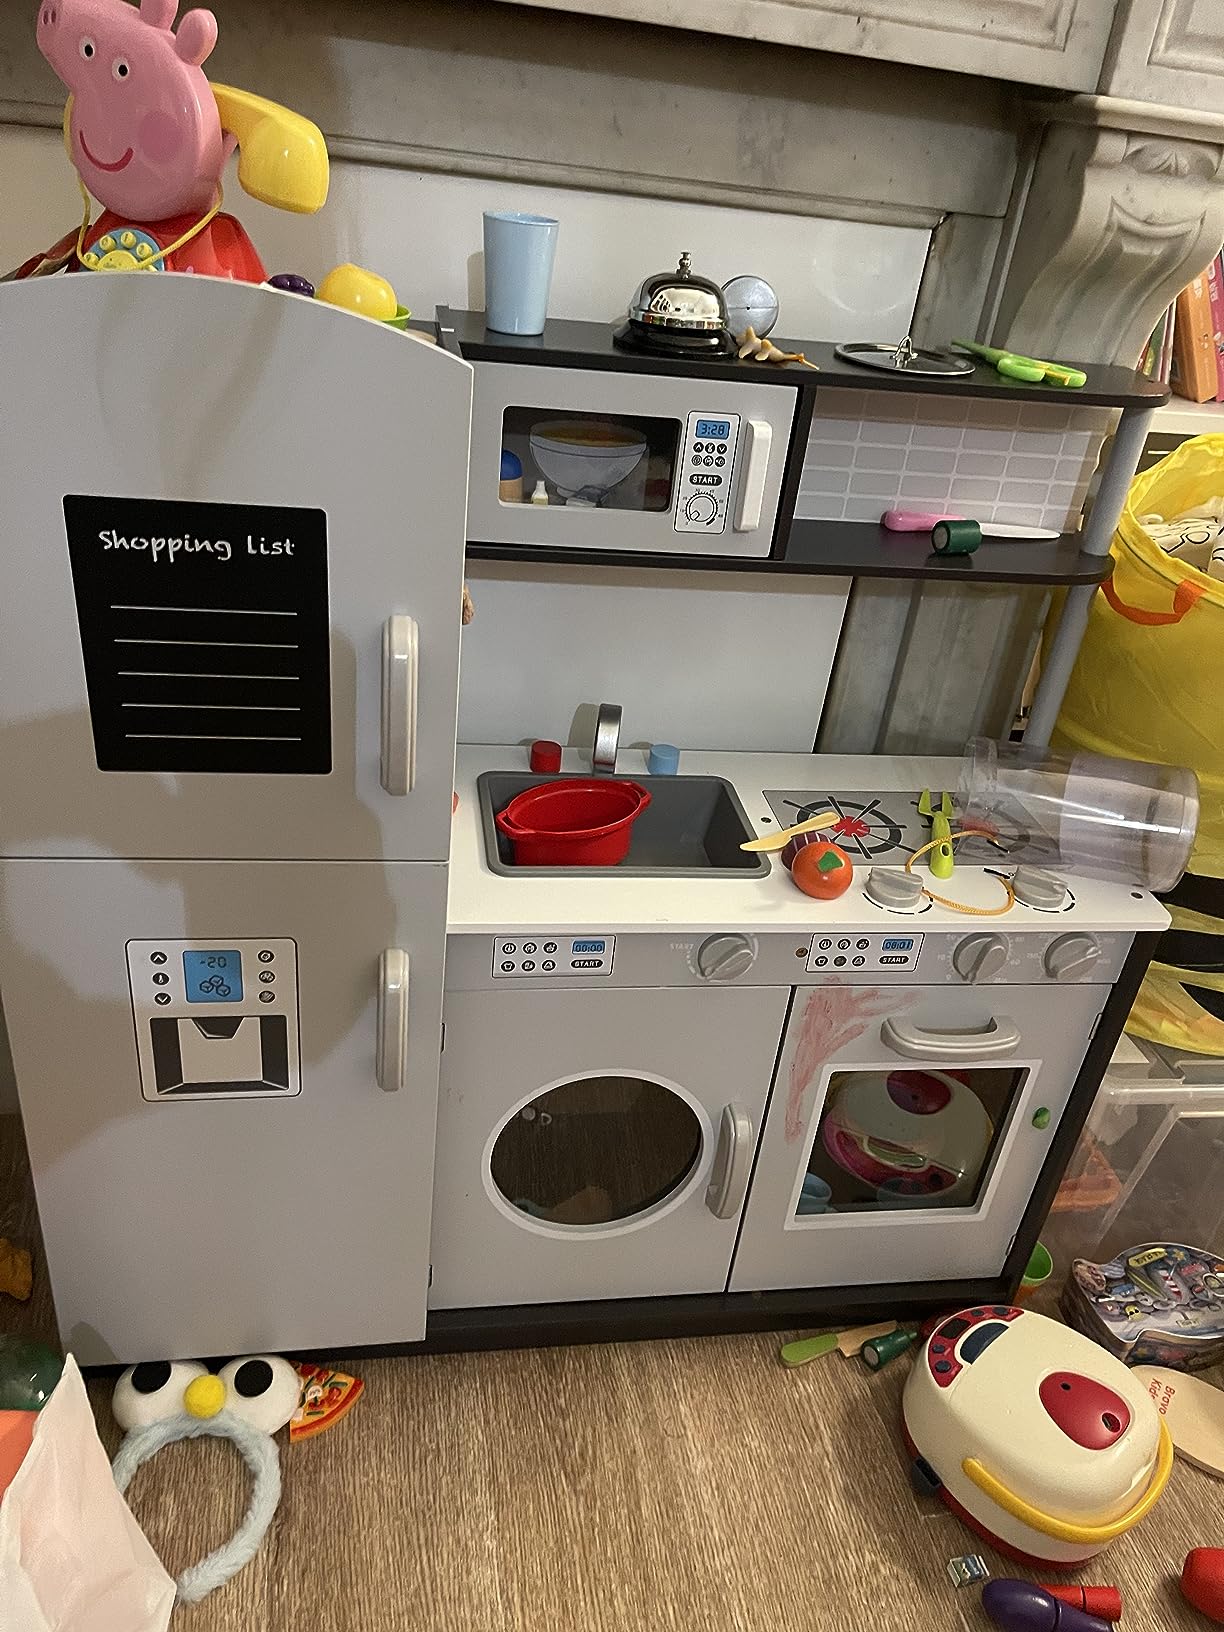 Cuisine Enfant en Sapin Non Toxique avec Réfrigérateur à 2 Niveaux Évier,  Four, pour Enfant de 3+ Ans 97 x30 x 95 CM - Costway